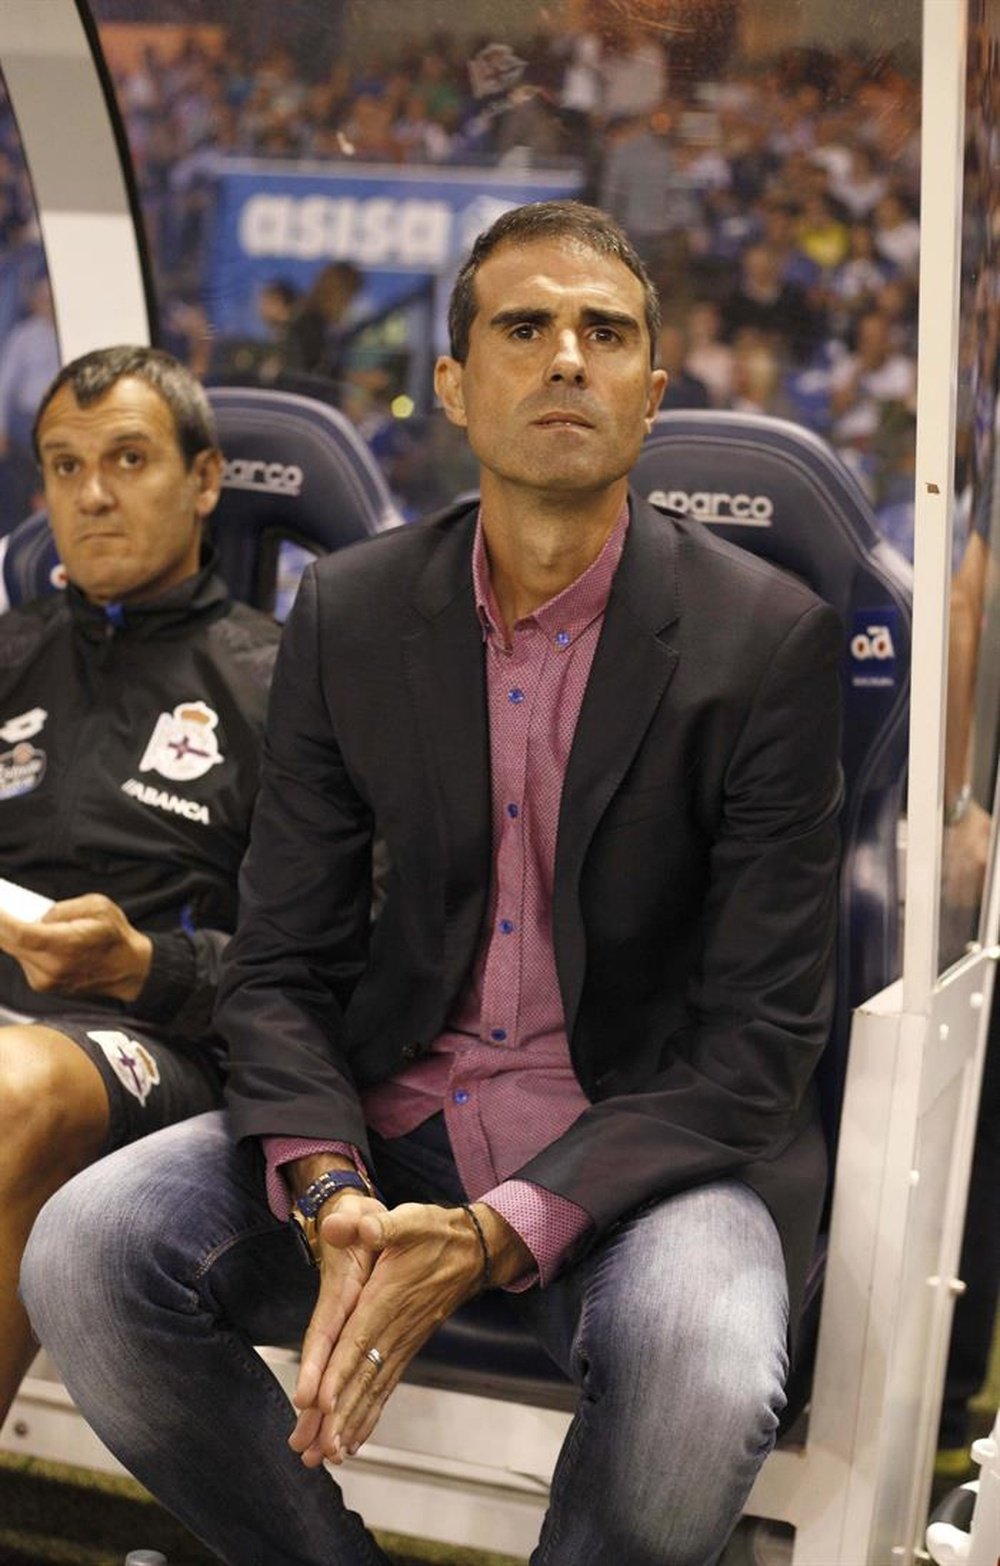 El entrenador del Deportivo Gaizka Garitano, durante el partido de la primera jornada de Liga en Primera División que Deportivo y Eibar juegan esta noche en el estadio de Riazor, en A Coruña. EFE/Archivo